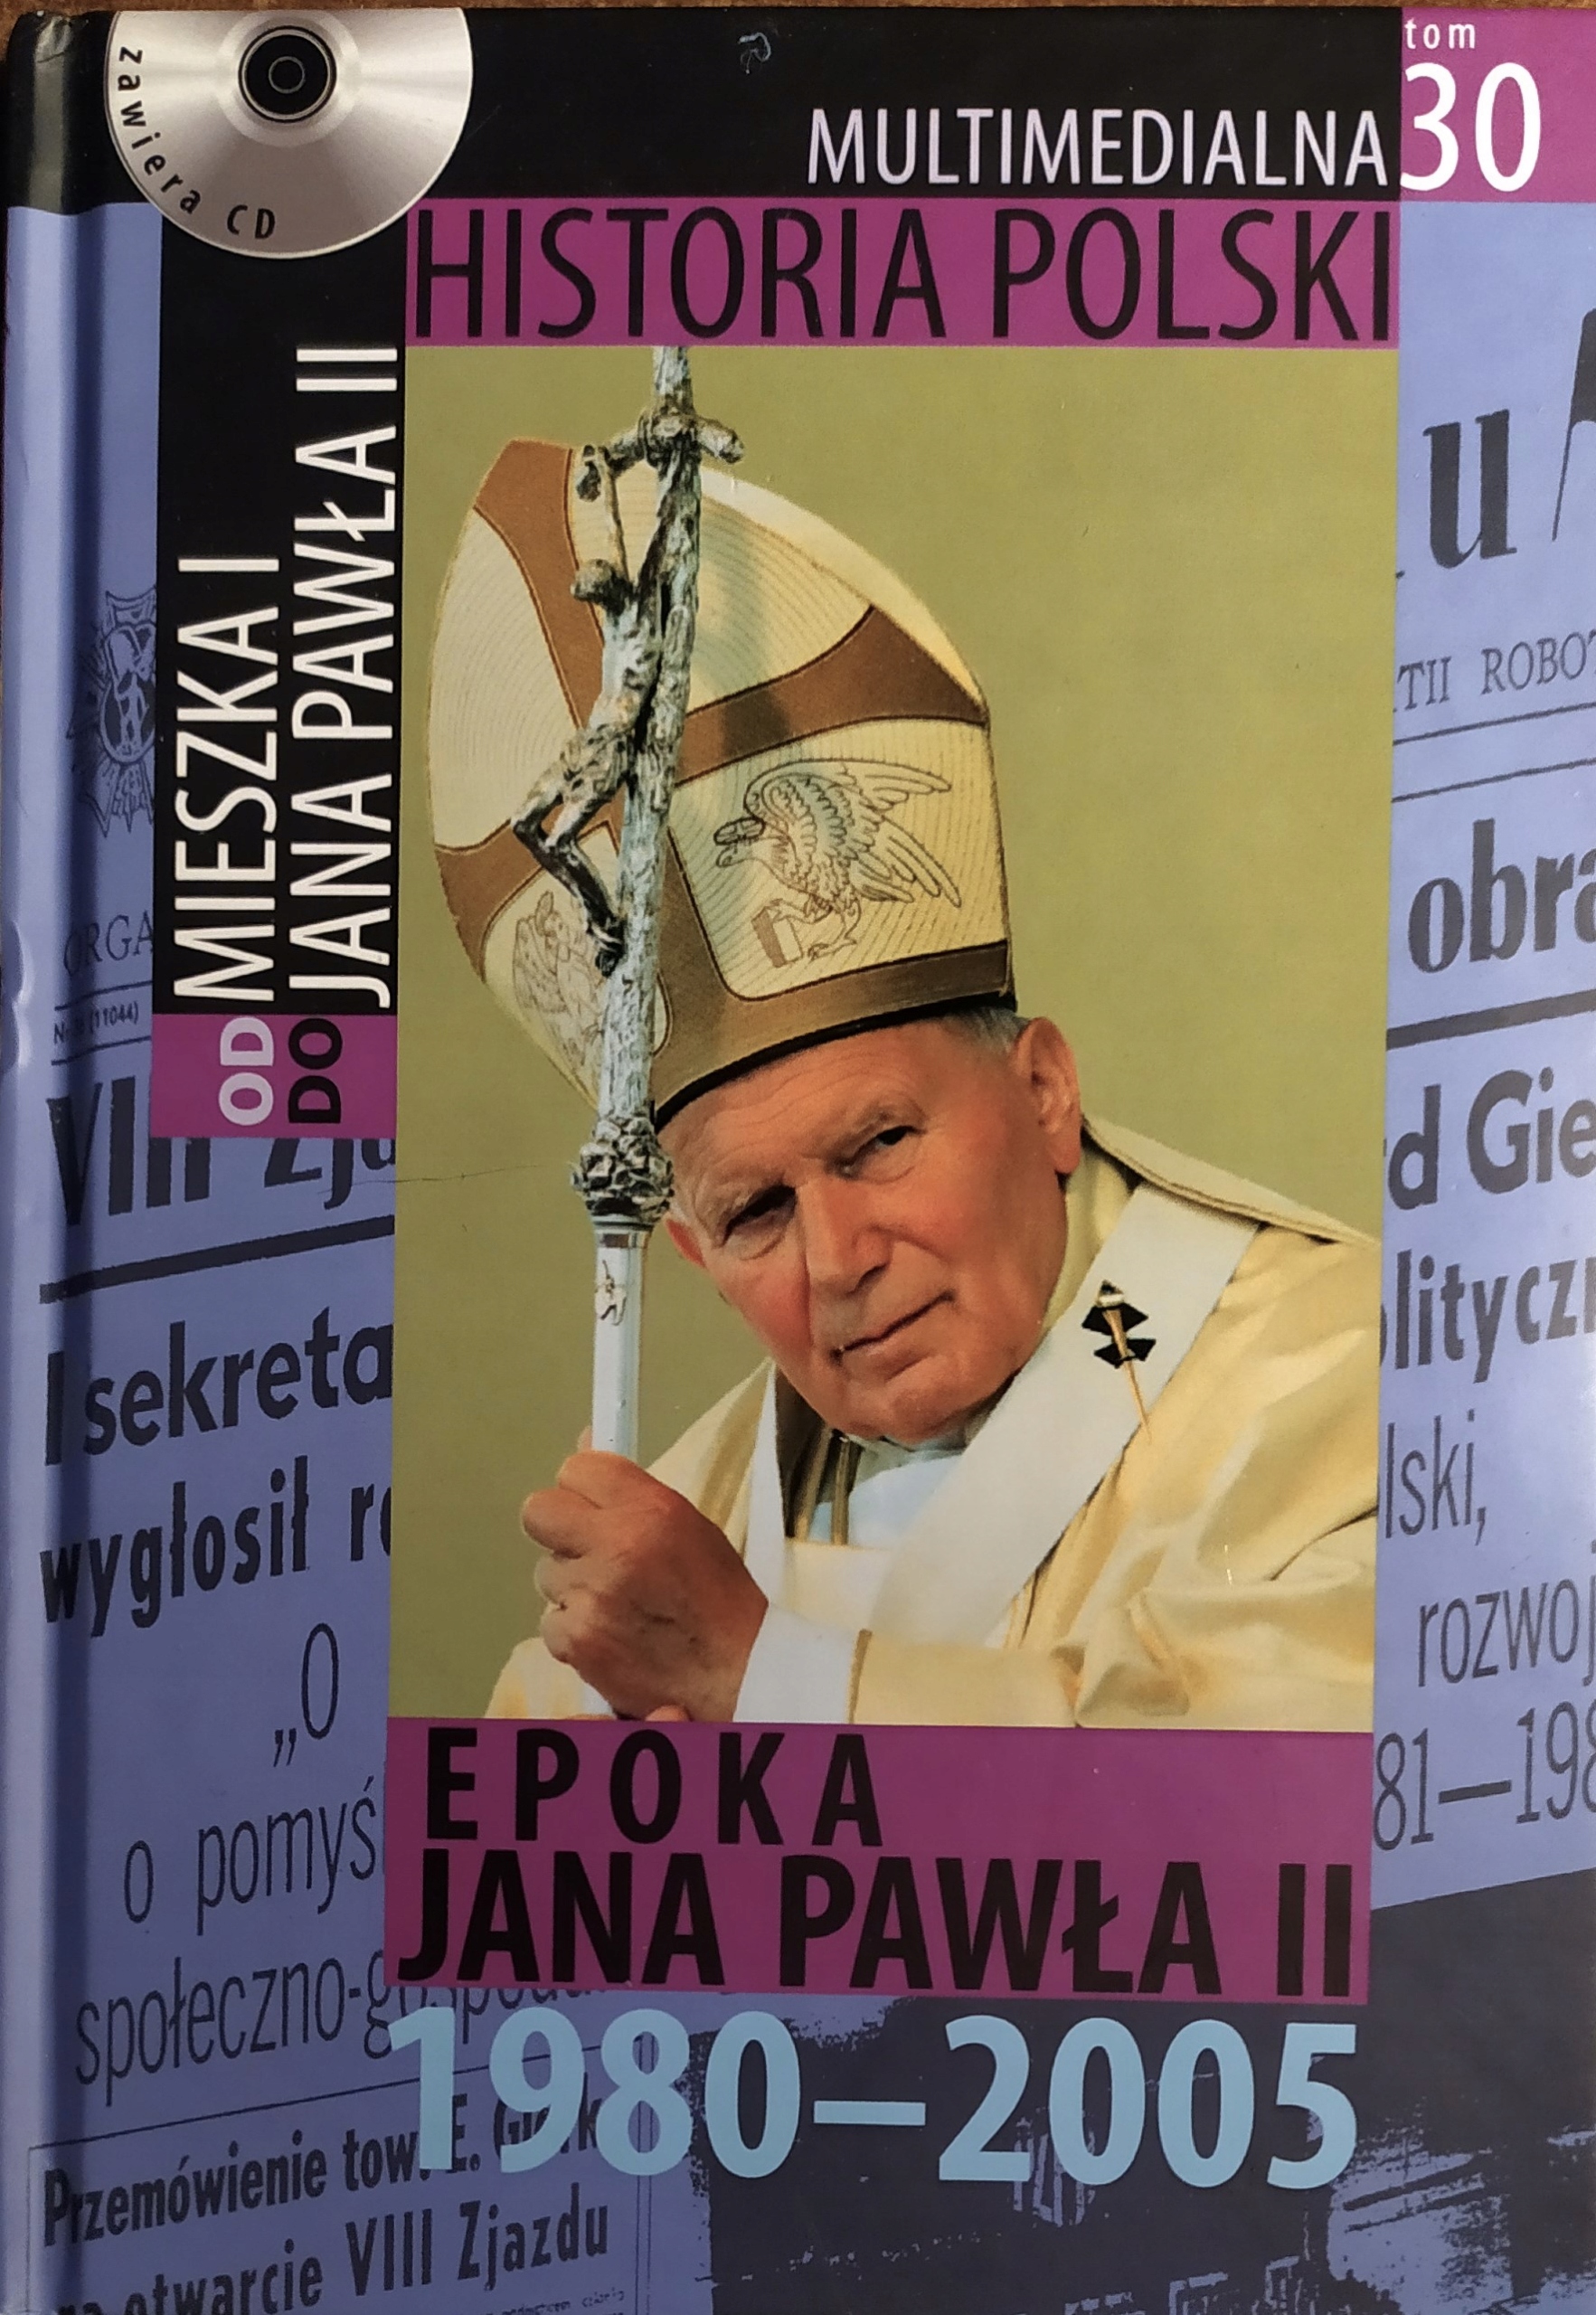 MULTIMEDIALNA HISTORIA POLSKI - OD MIESZKA I DO JANA PAWŁA II - 30. EPOKA JANA PAWŁA II 1980-2005